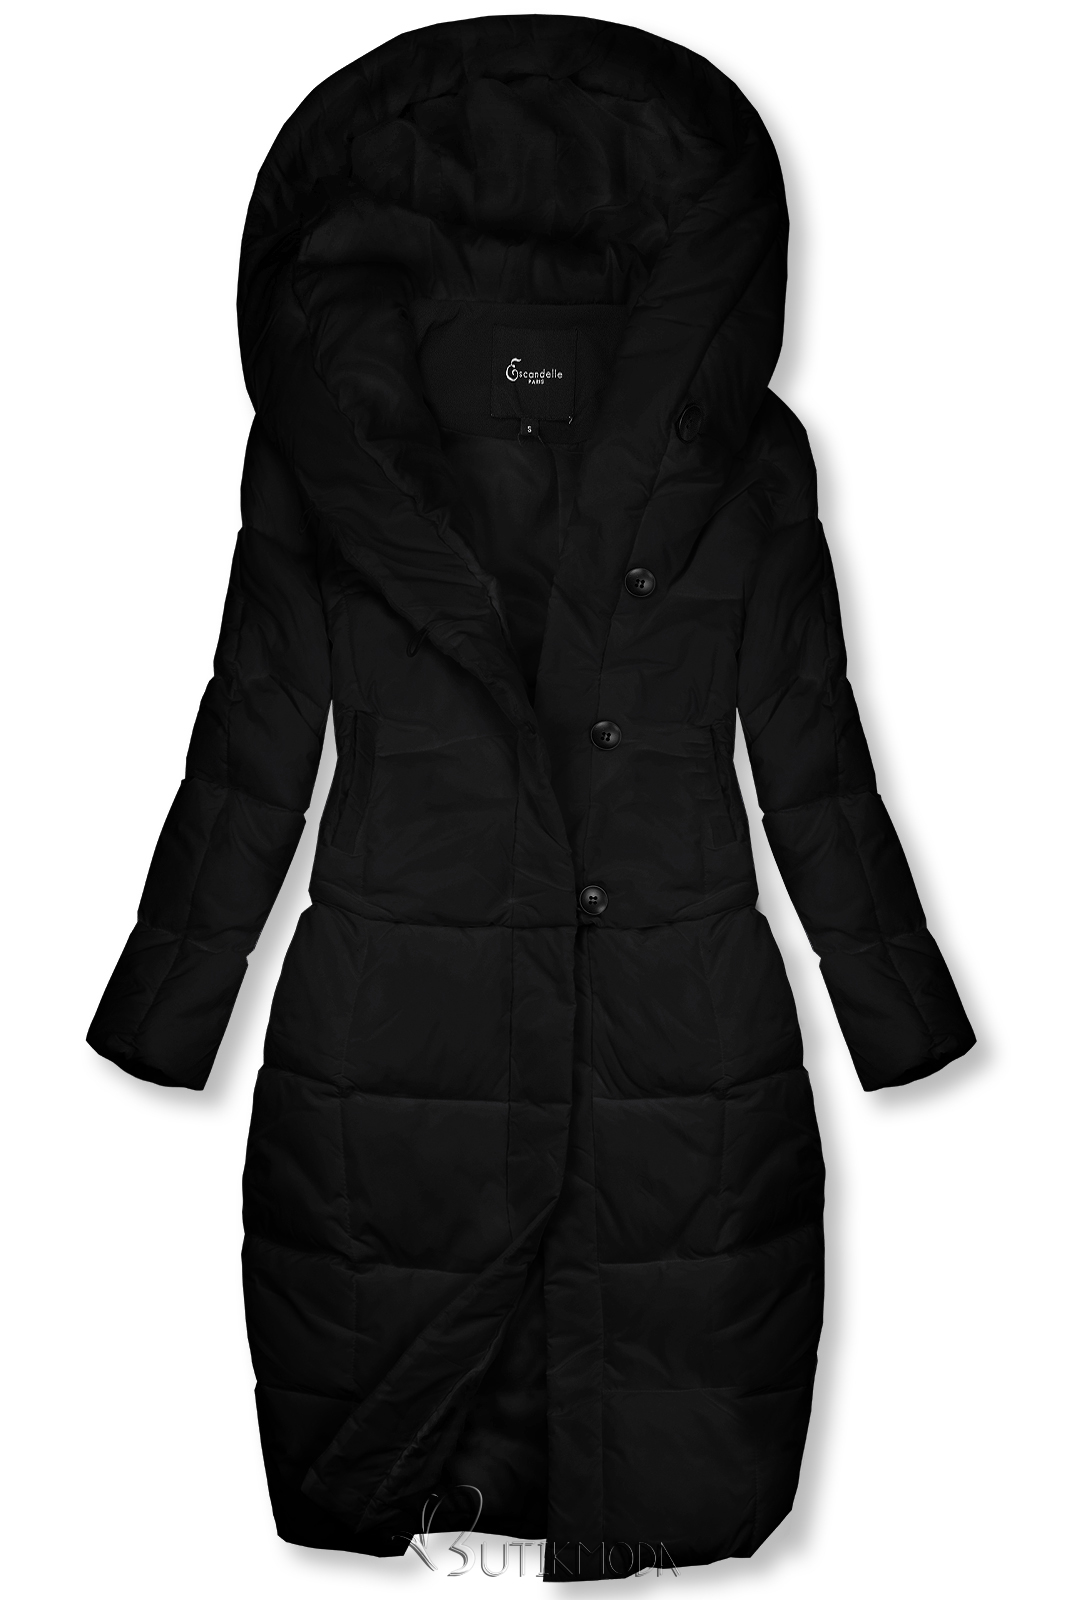 Fekete színű téli kabát 2 az 1-ben